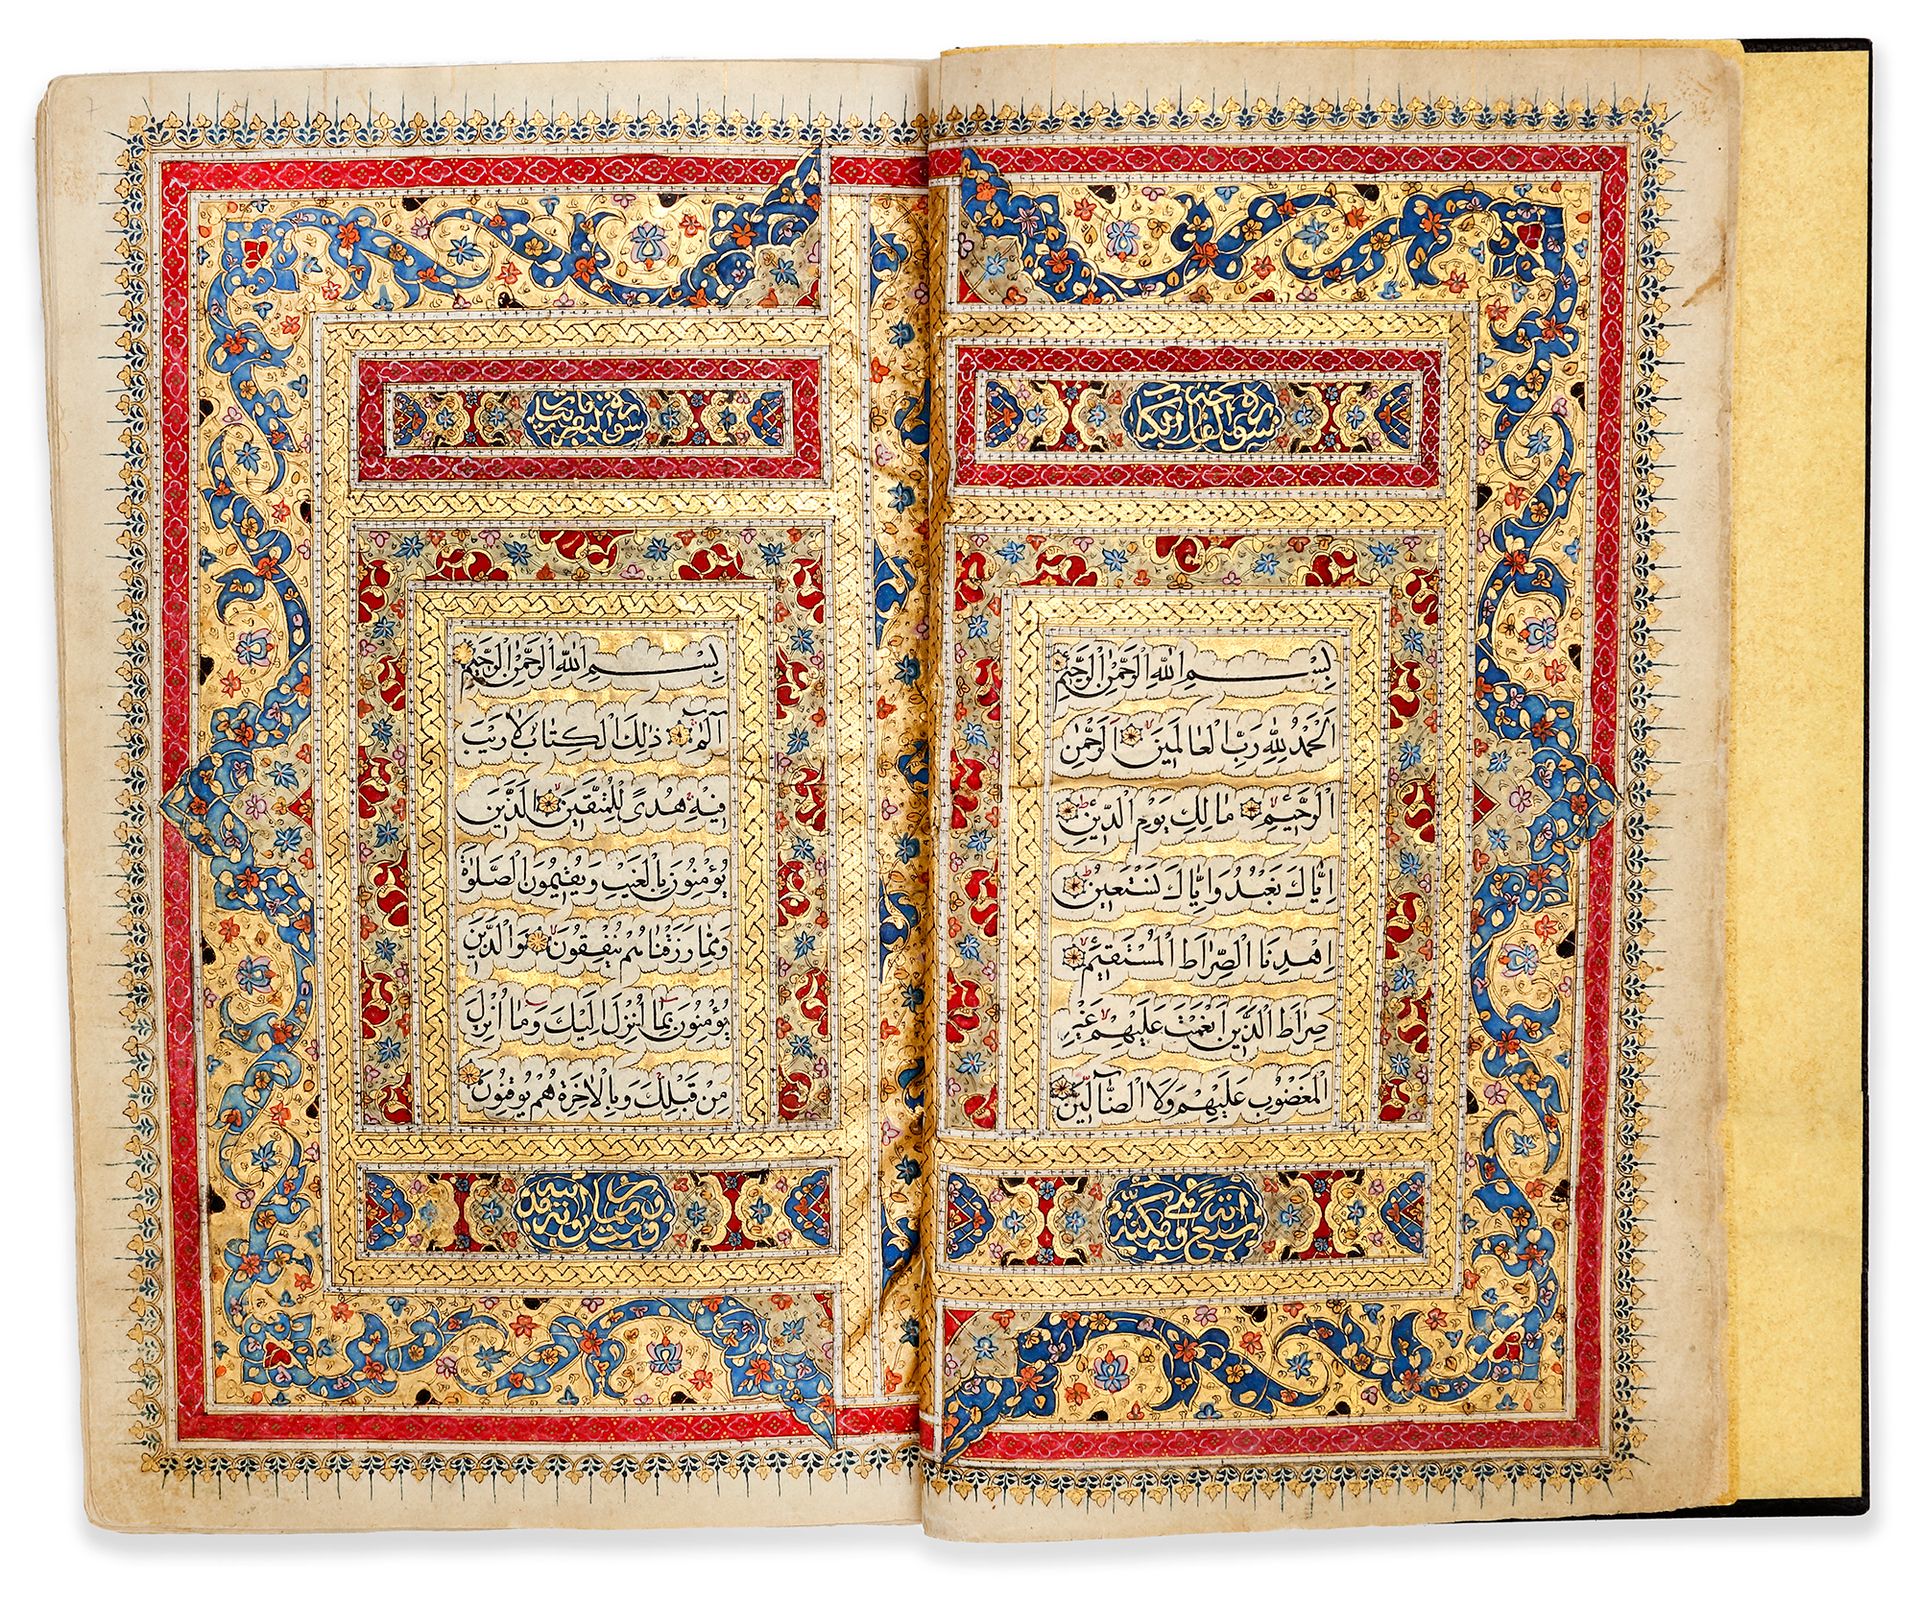 AN ILLUMINATED QAJAR QURAN BY JA'FAR AL-NARDI, DATED 1240 AH/1824 AD 纸质阿拉伯文手稿，每对&hellip;